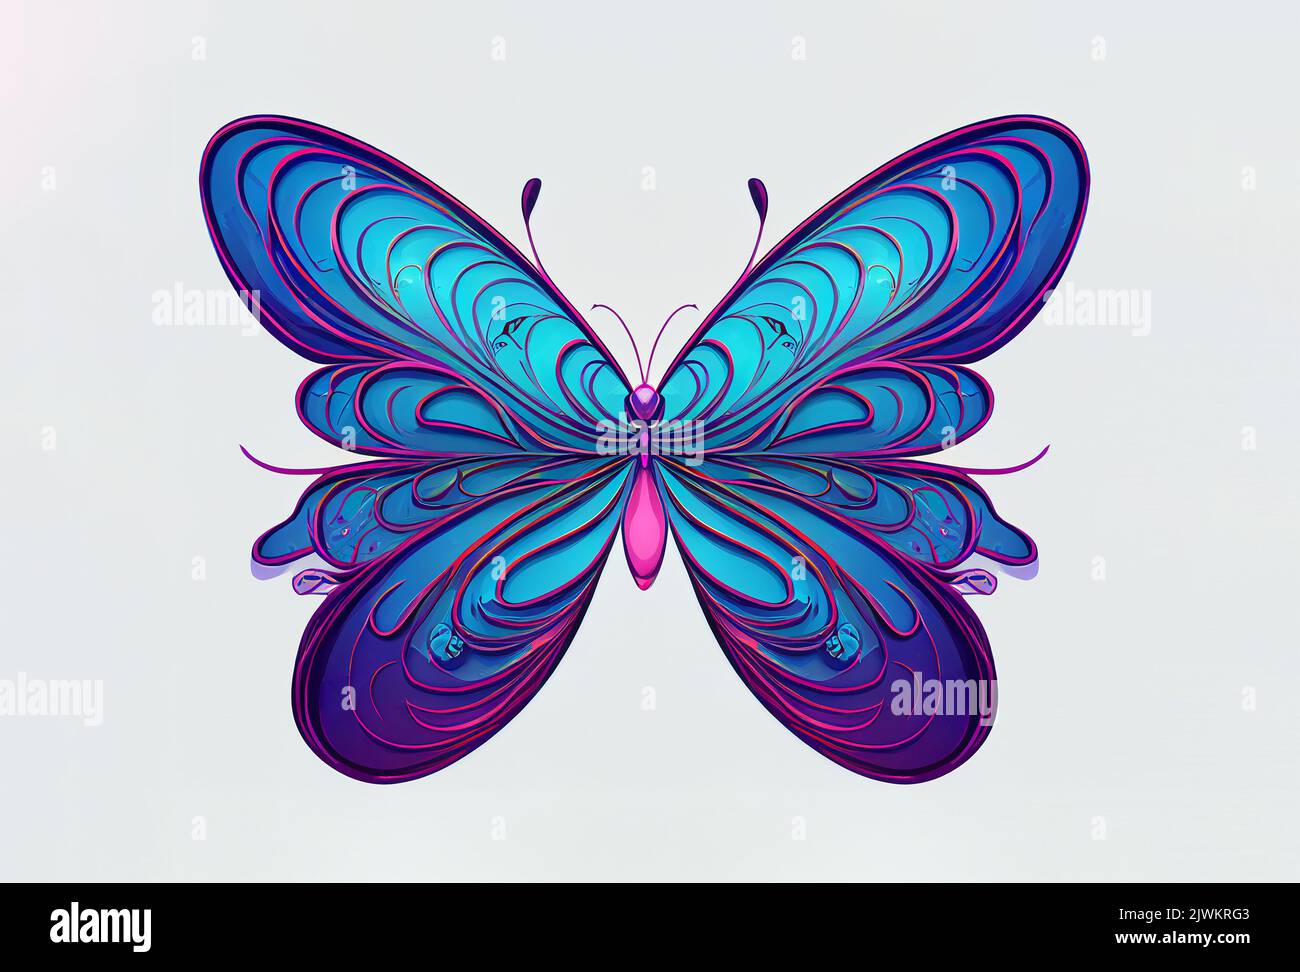 Illustration d'un papillon. Idéal pour une utilisation virtuelle ou imprimée. Banque D'Images